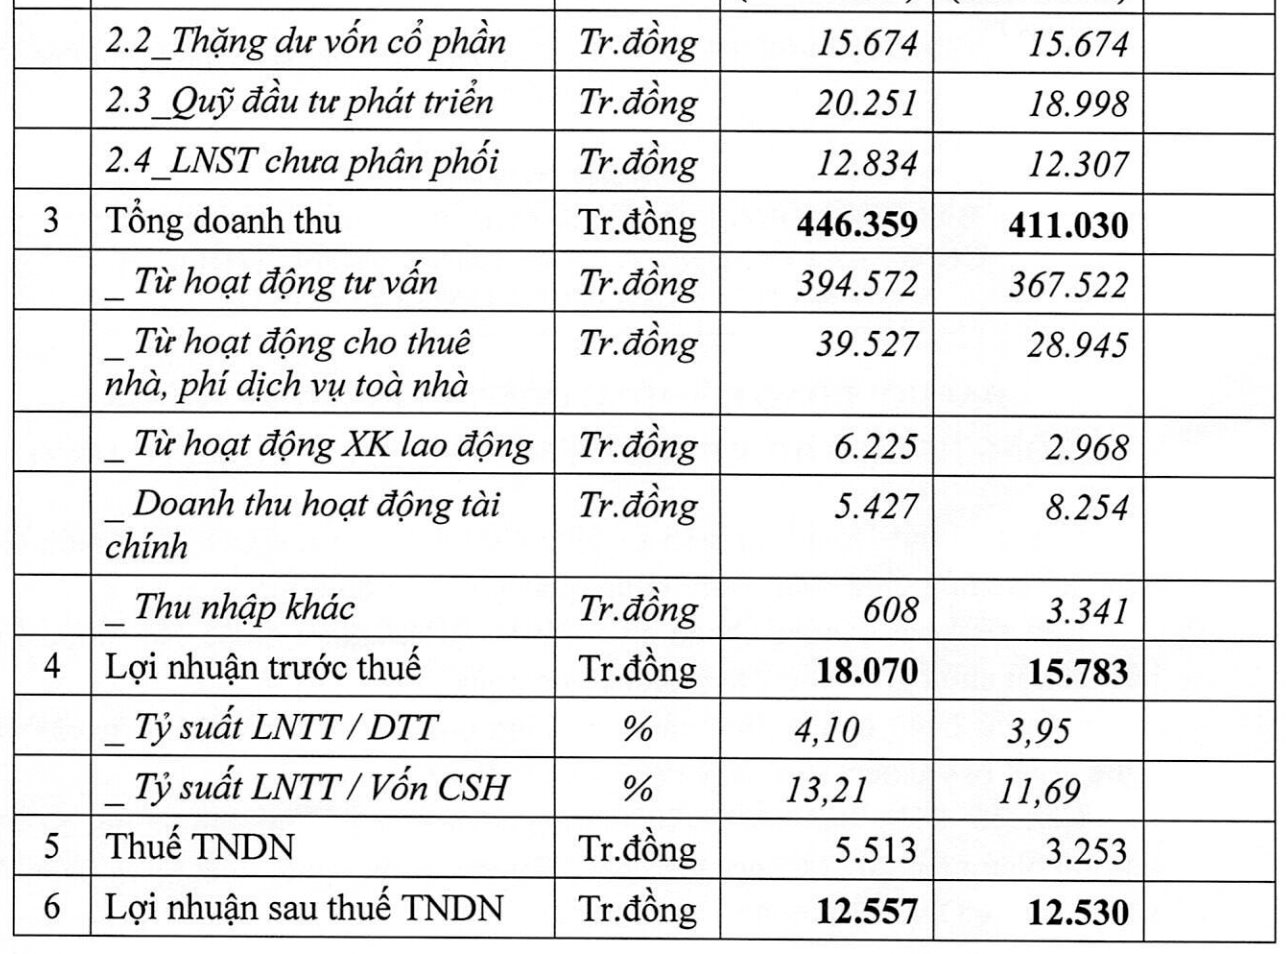 Lộ diện nhà thầu Việt trúng gói thầu 5.12 trị giá 630 tỷ đồng thuộc dự án sân bay Long Thành, đang giao dịch trên sàn chứng khoán - Ảnh 3.